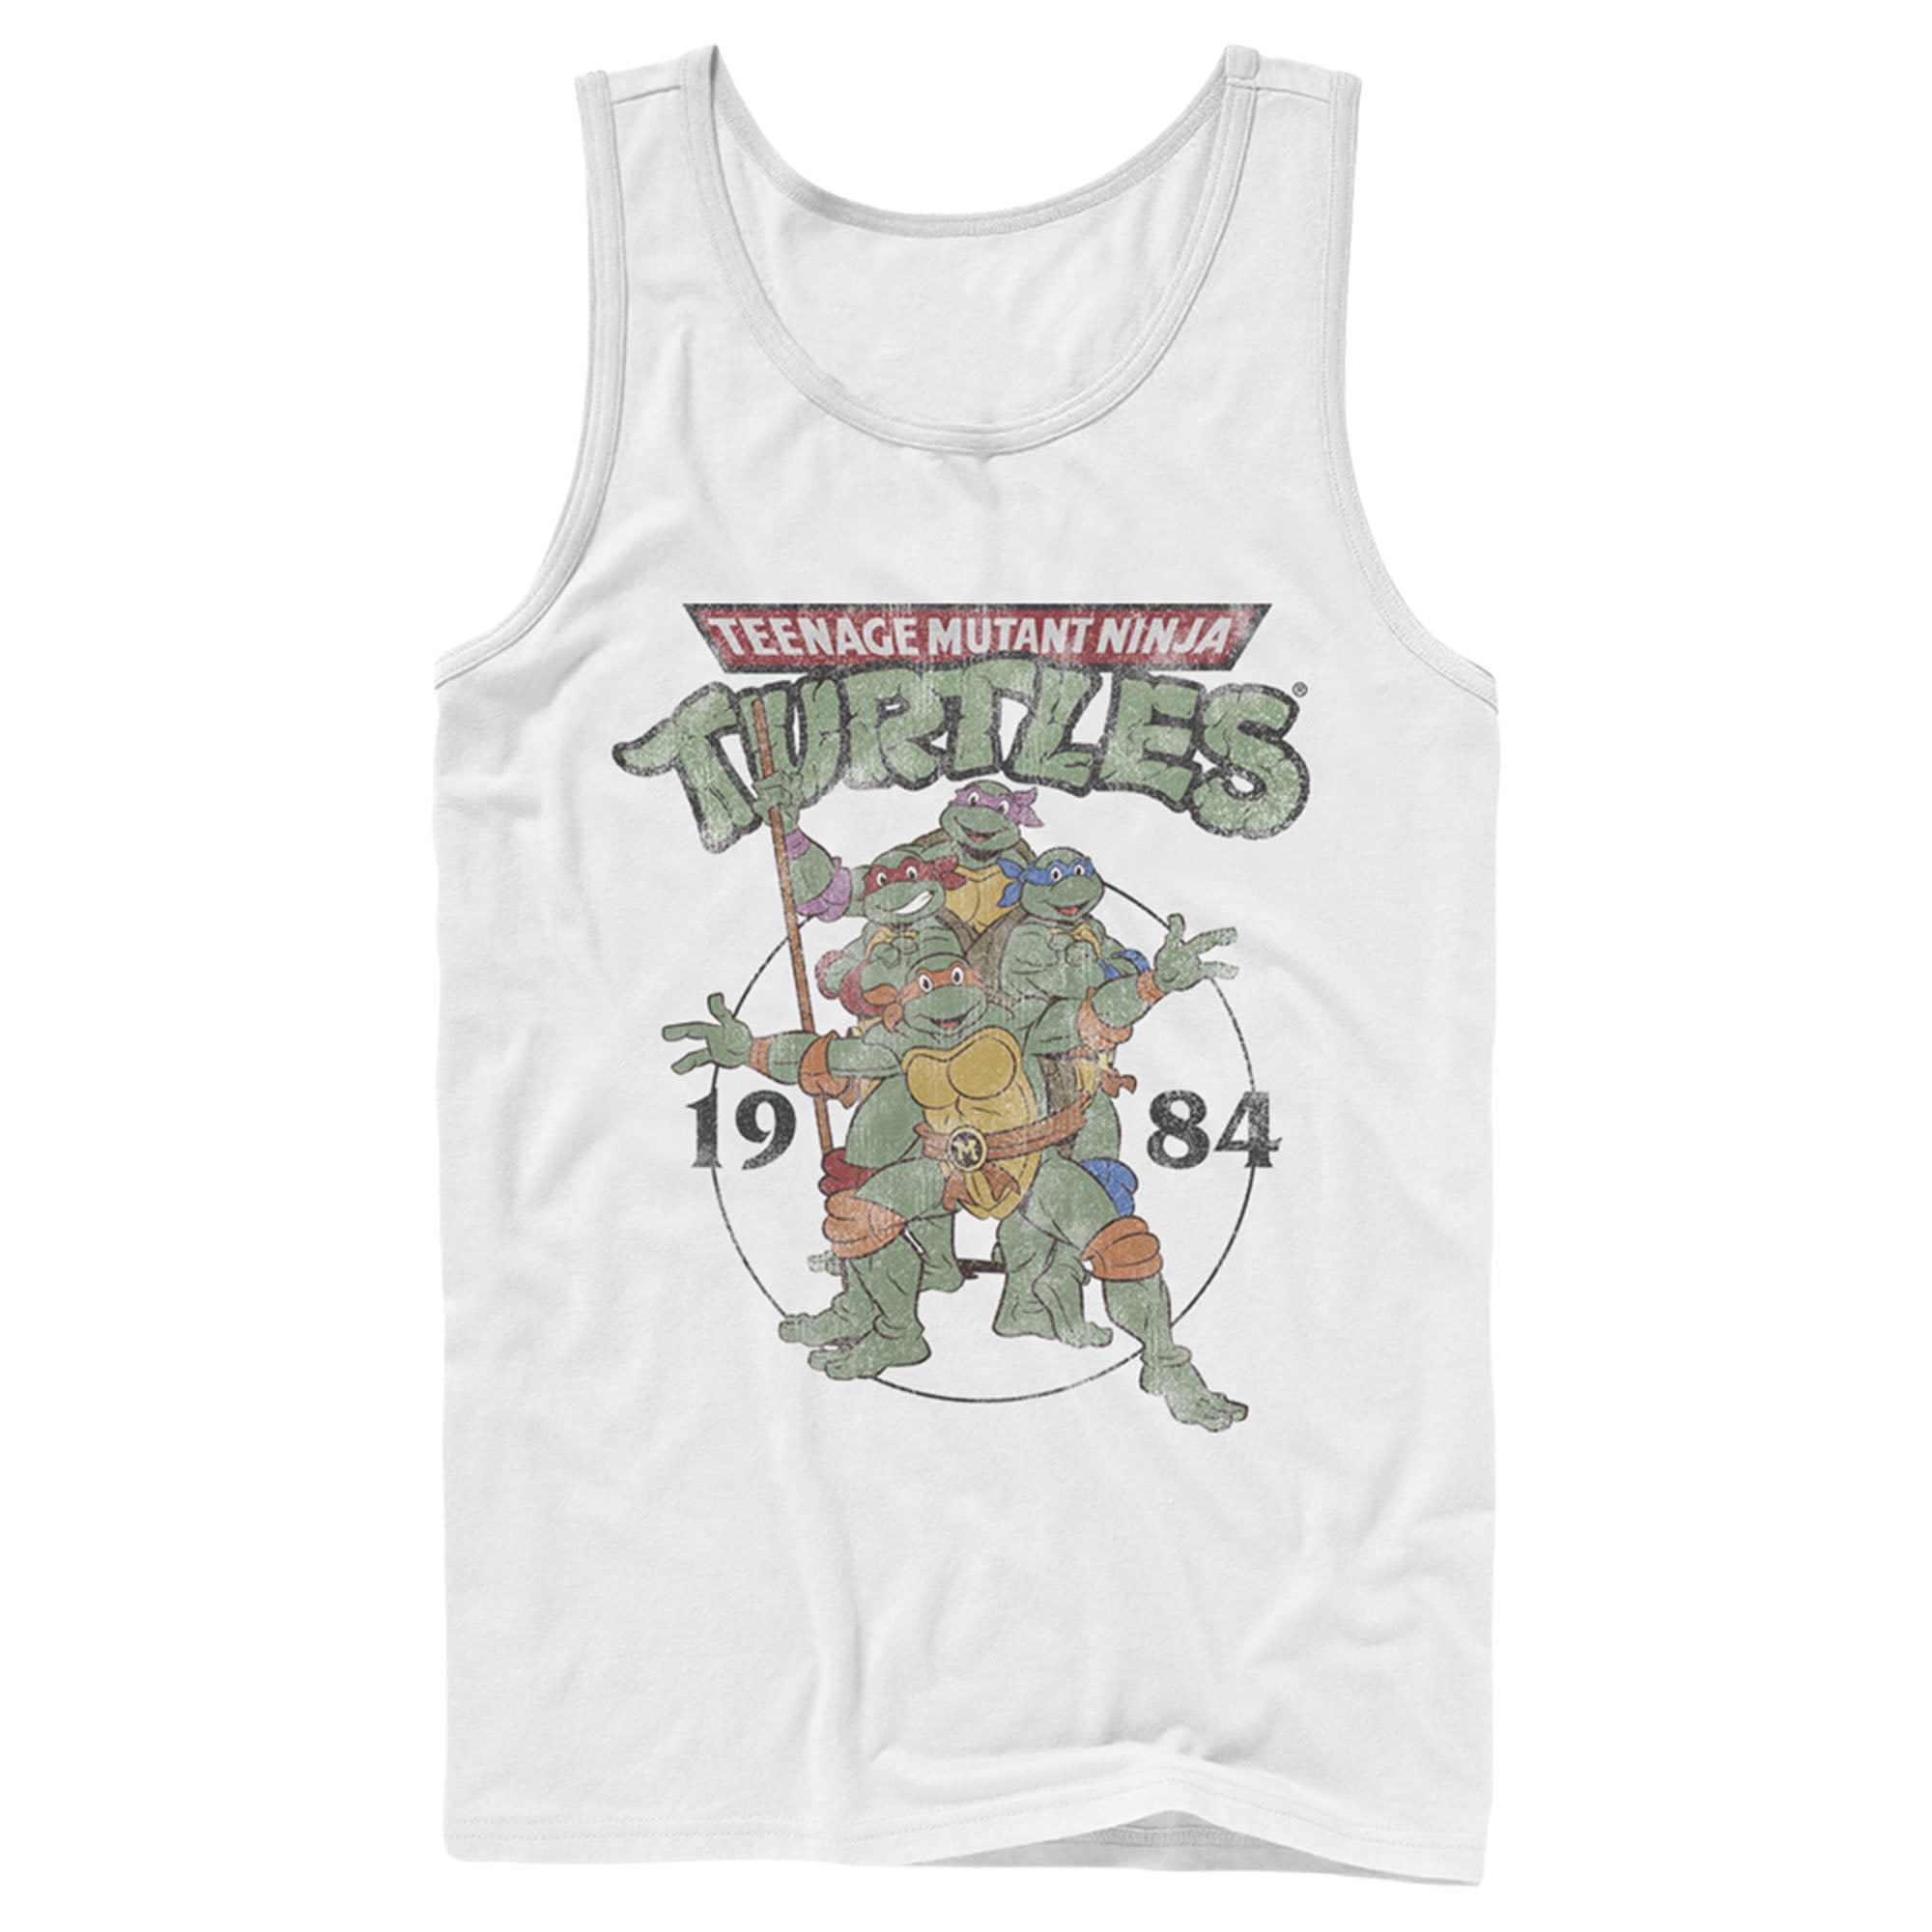 TMNT Football Jersey #84 Teenage Mutant Ninja Turtles Shirt Mens